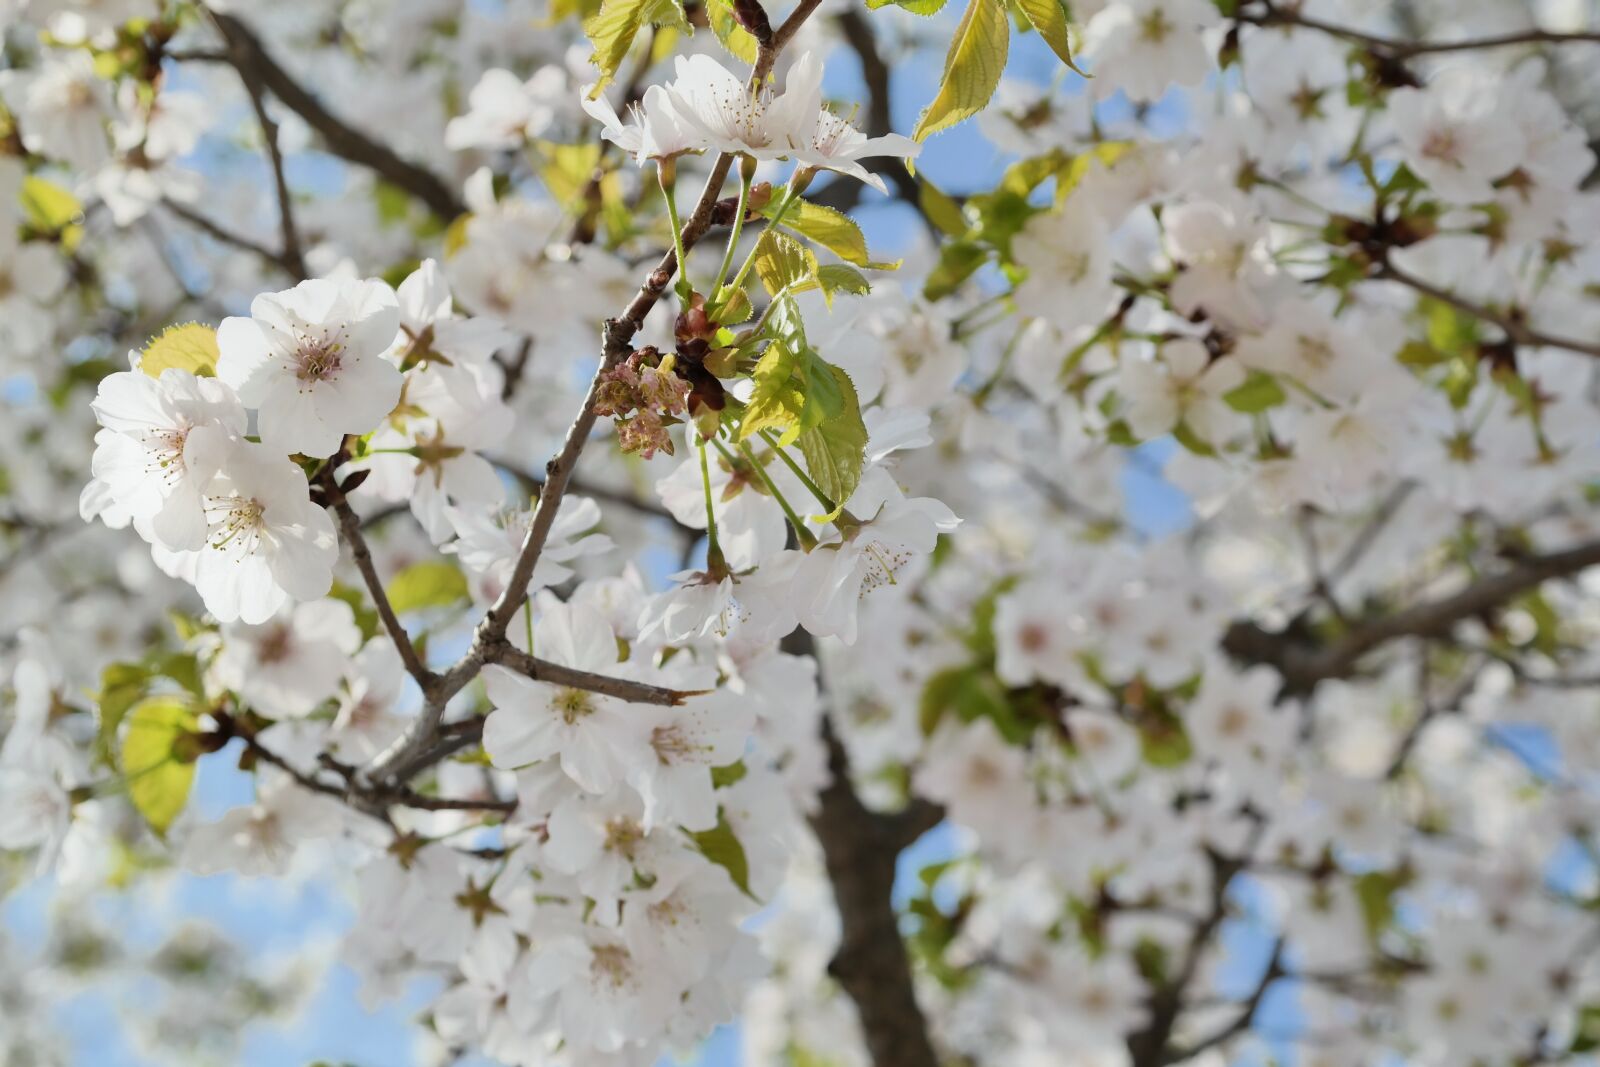 Samsung NX30 + NX 18-55mm F3.5-5.6 sample photo. Cherry blossom, sky, spring photography